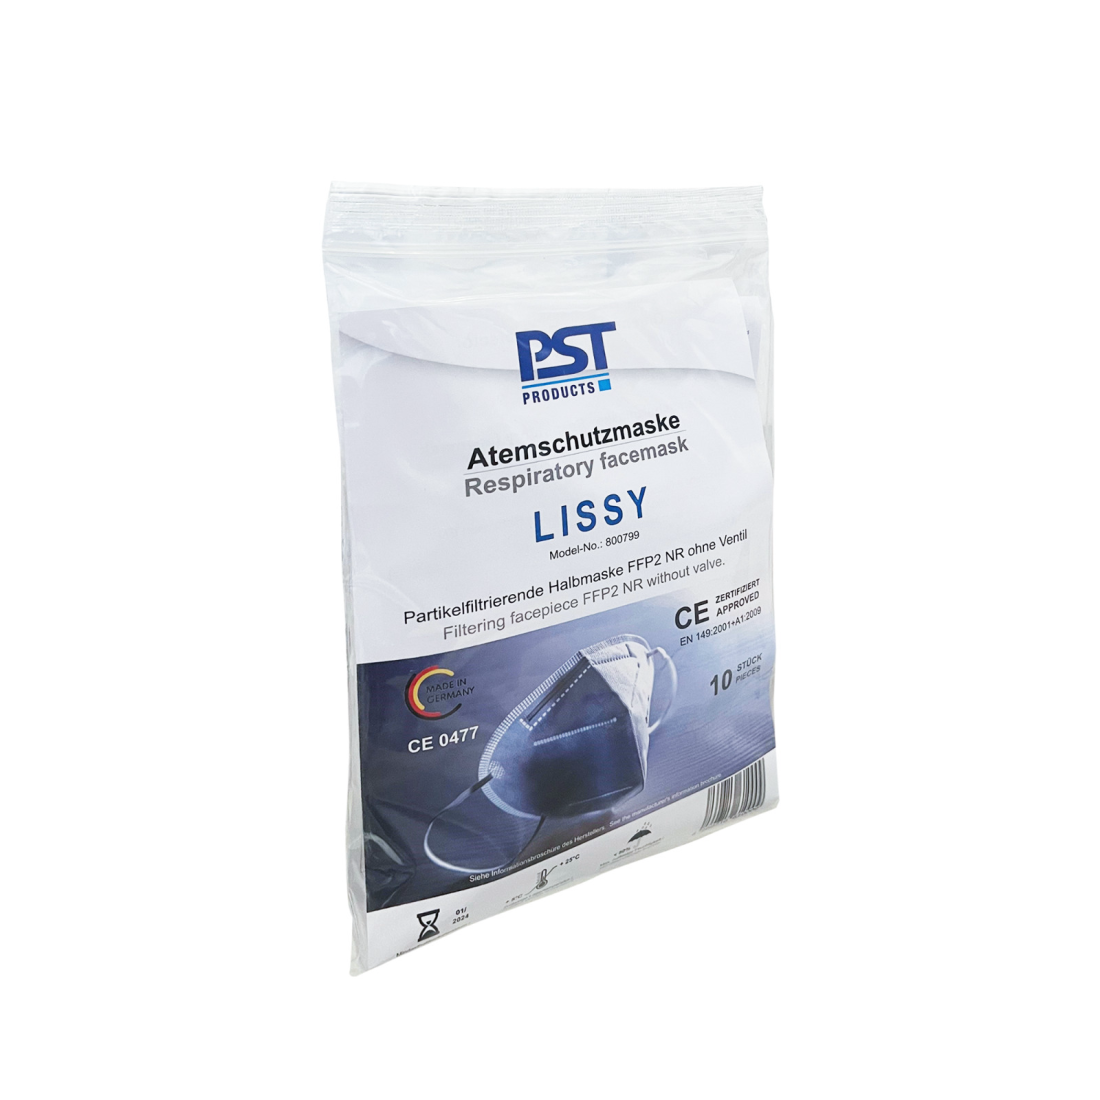 PST Partikelfiltrierende Halbmaske Lissy - FFP2 Maske ohne Ventil,  Made in Germany - hergestellt in Deutschland